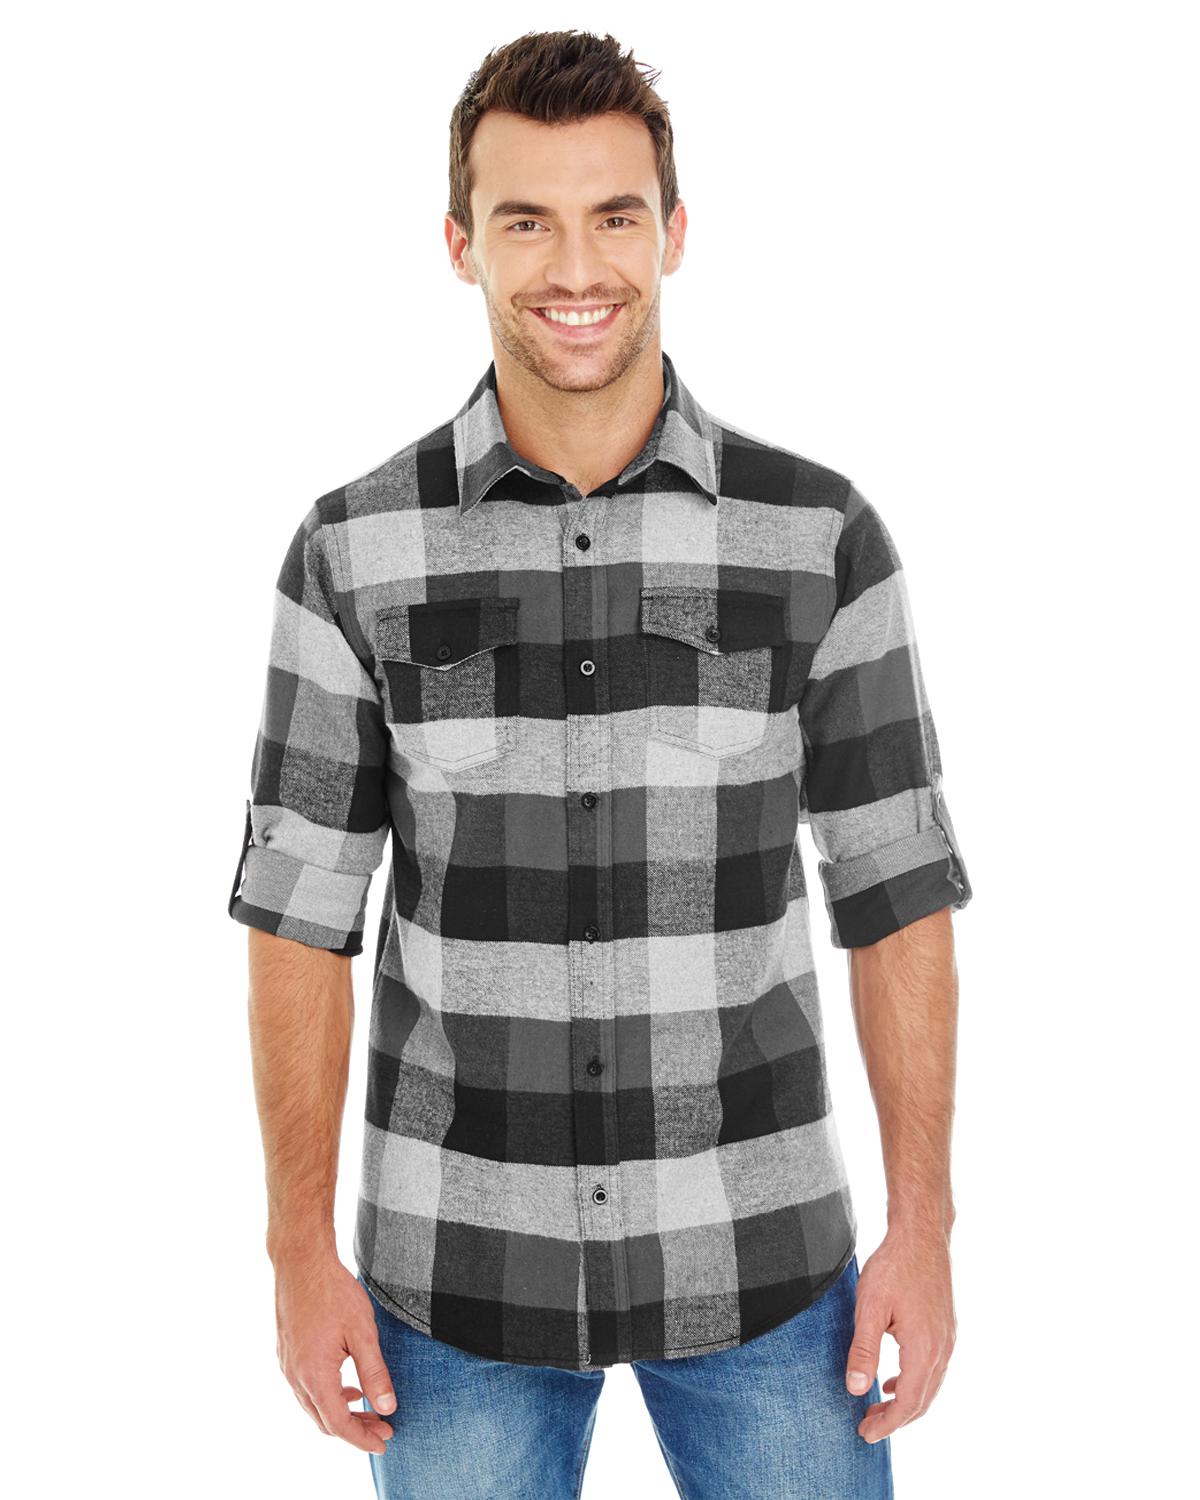 Burnside B8210 Men's Plaid Flannel Shirt - Shirtmax